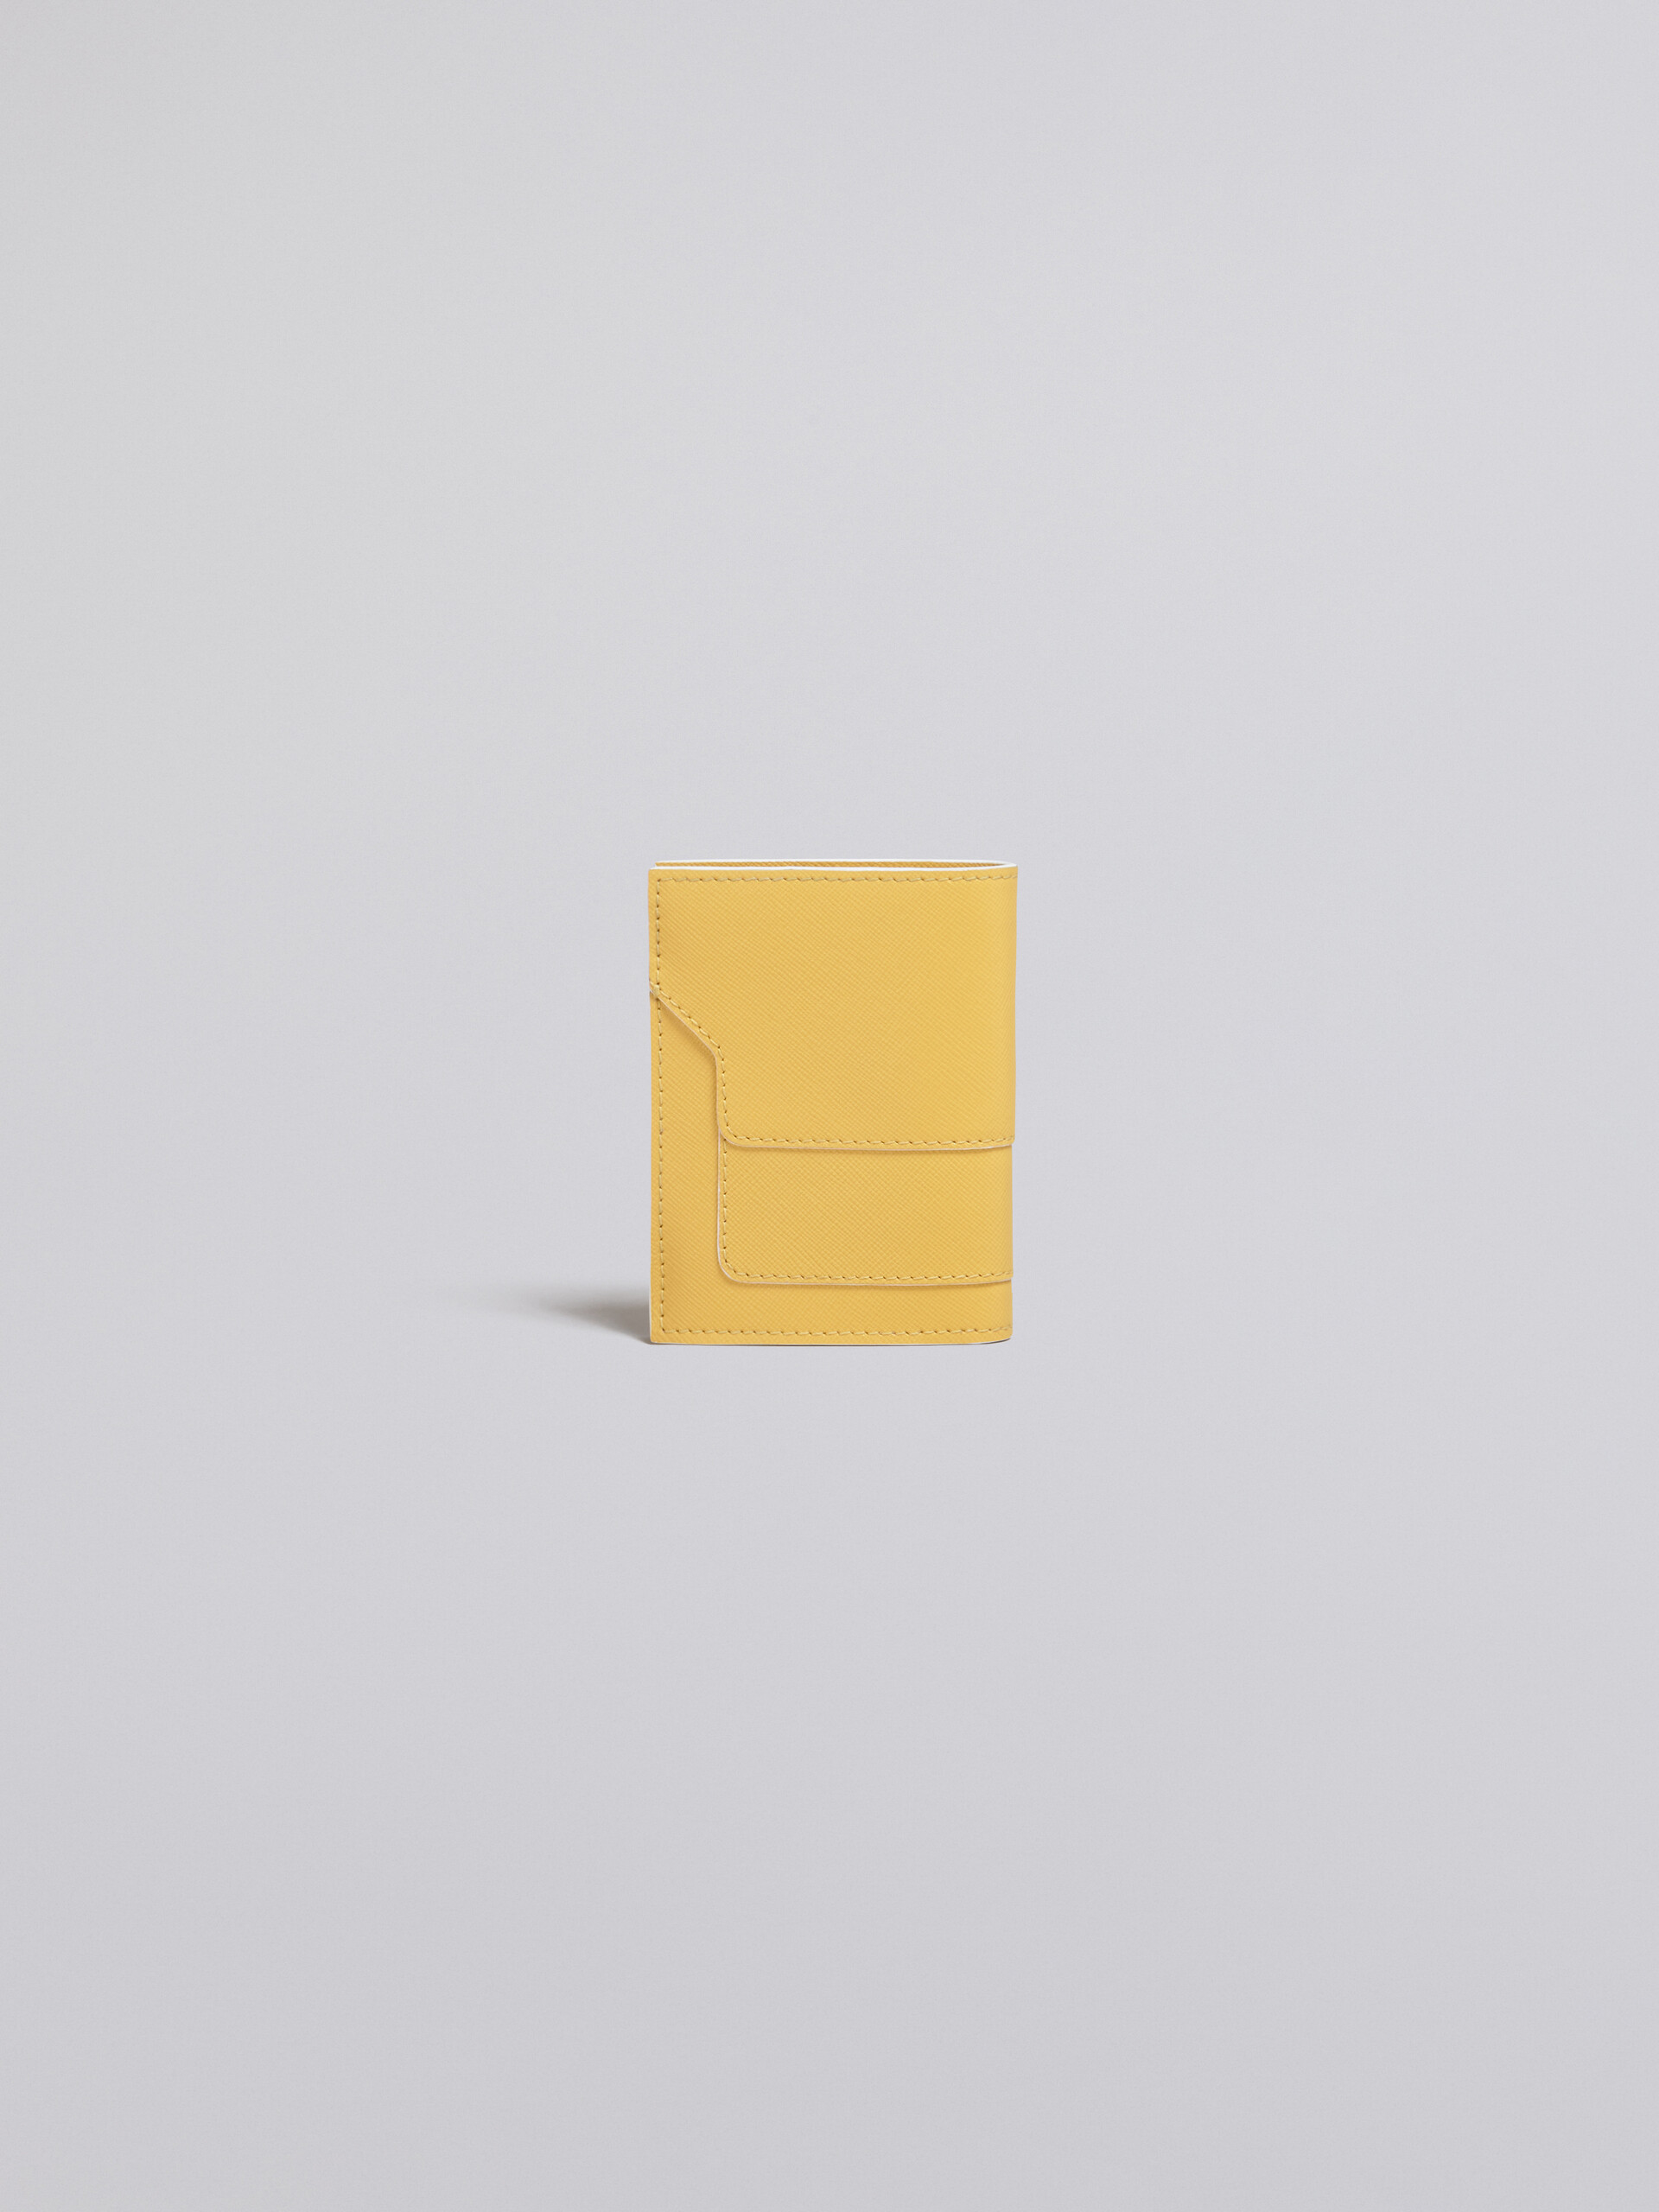 Einfarbige zweiteilige Geldbörse aus Saffianleder in Gelb - Brieftaschen - Image 3